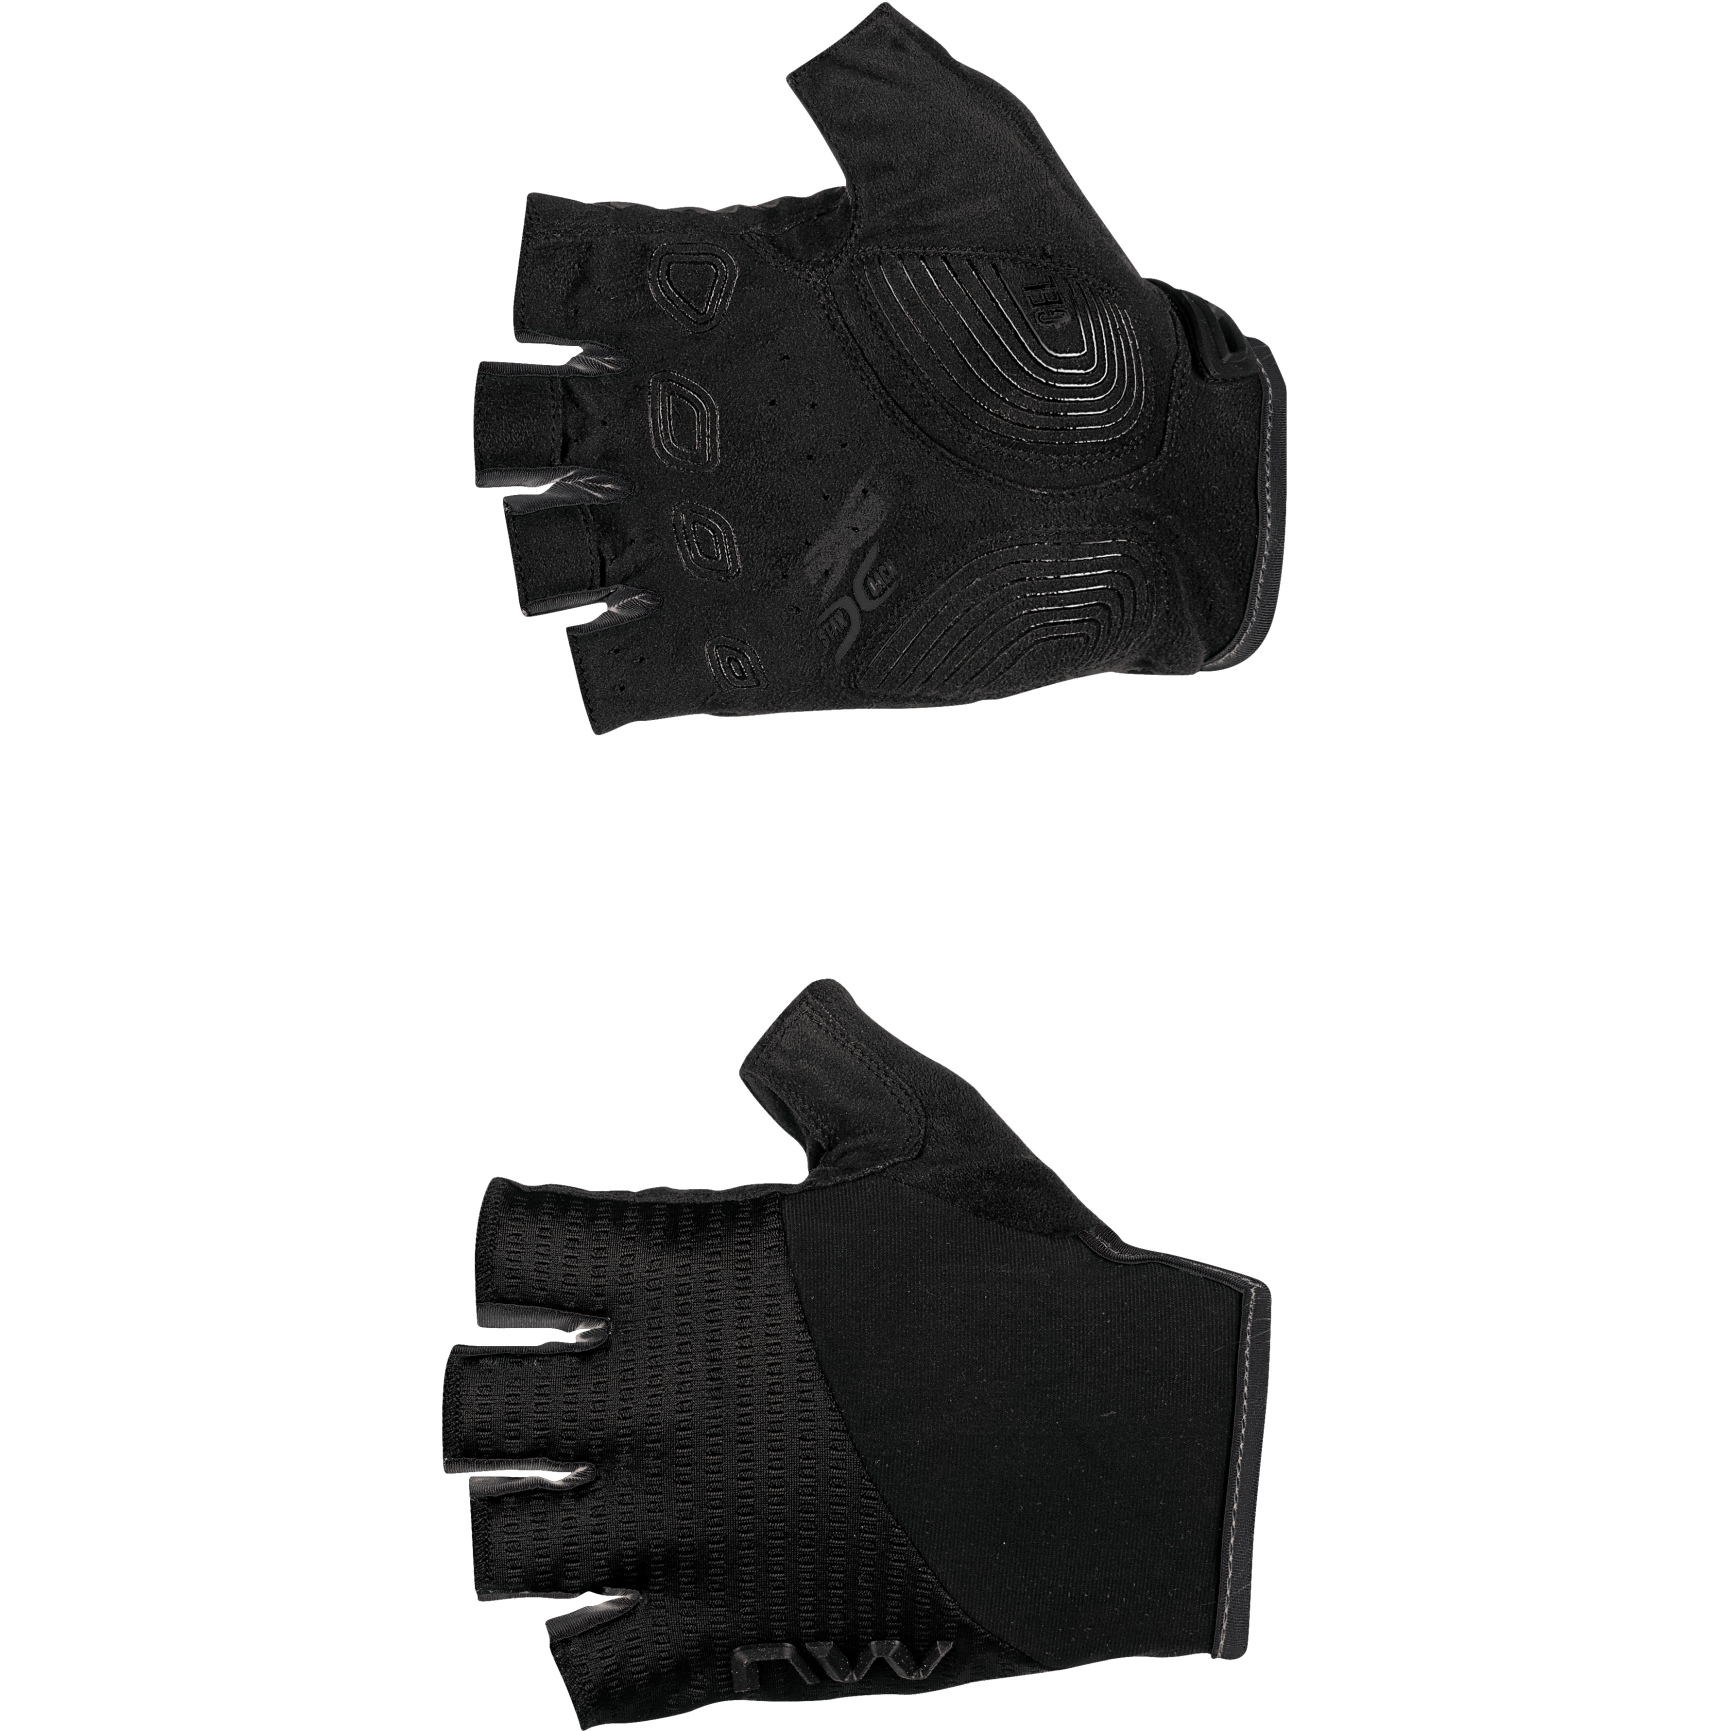 Produktbild von Northwave Fast Kurzfinger-Handschuhe Herren - schwarz 10